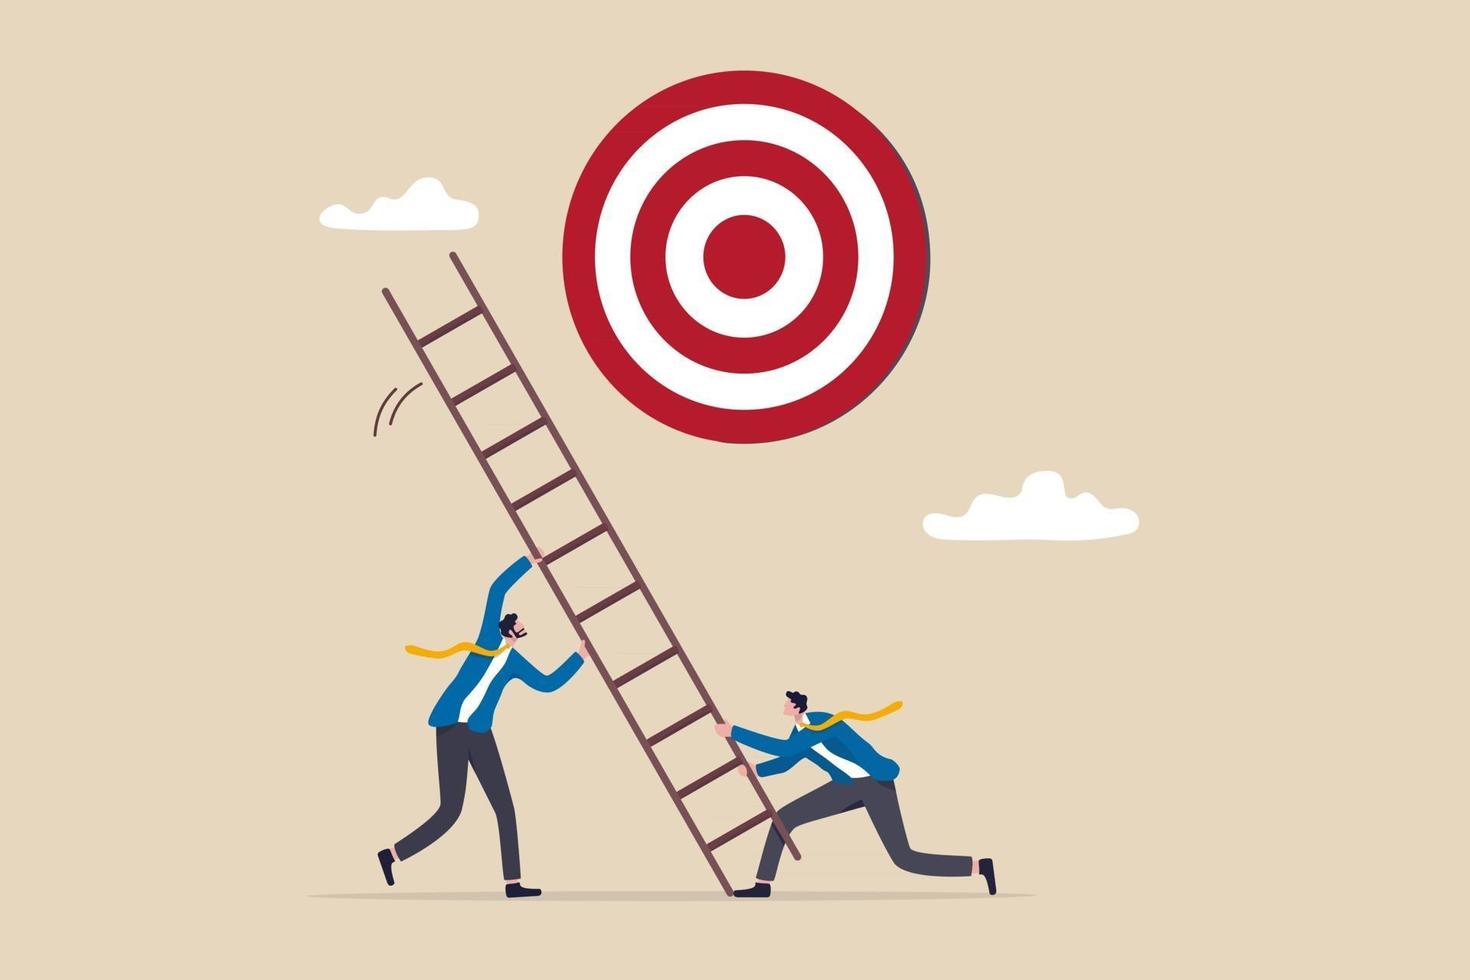 ontwikkel ladder naar succes, stel zakelijk doel, doel, doel en doelstelling, partnerschap en teamwerk tot kansconcept, zakenmensenteam helpt bij het opzetten van de ladder van succes om het doel te bereiken. vector